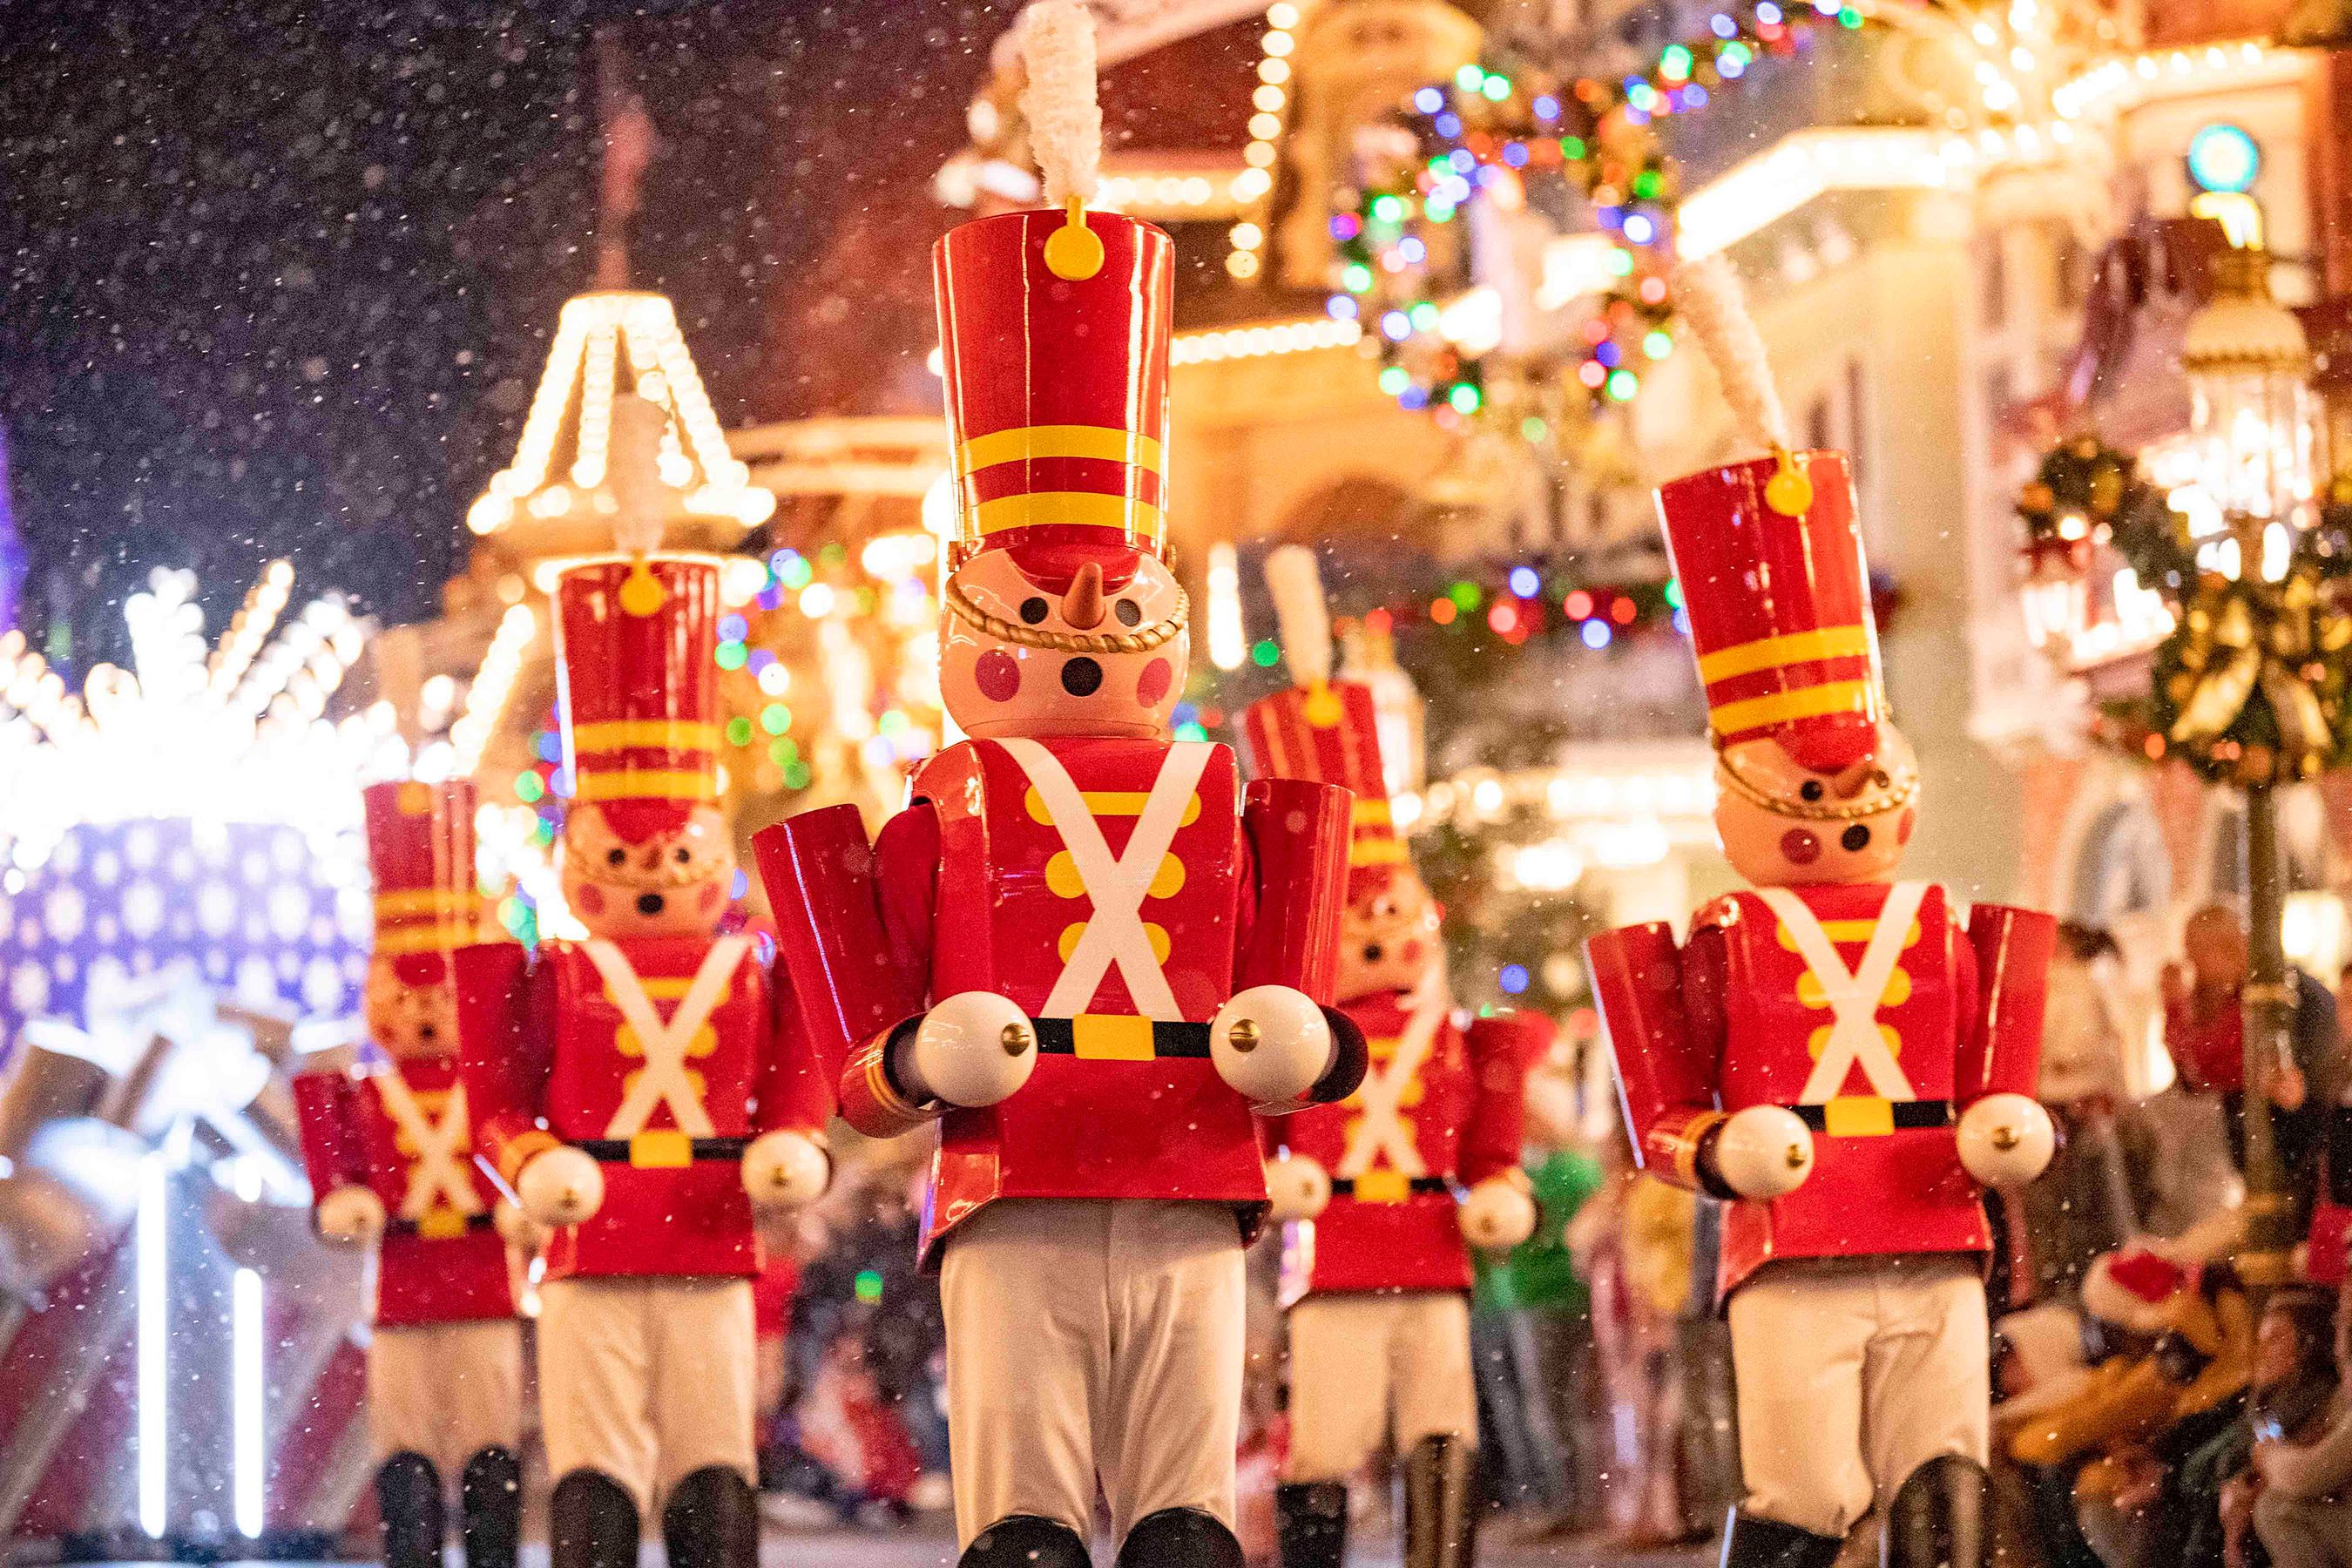 Reservas para Natal e/ou Ano Novo no Walt Disney World estão esgotando